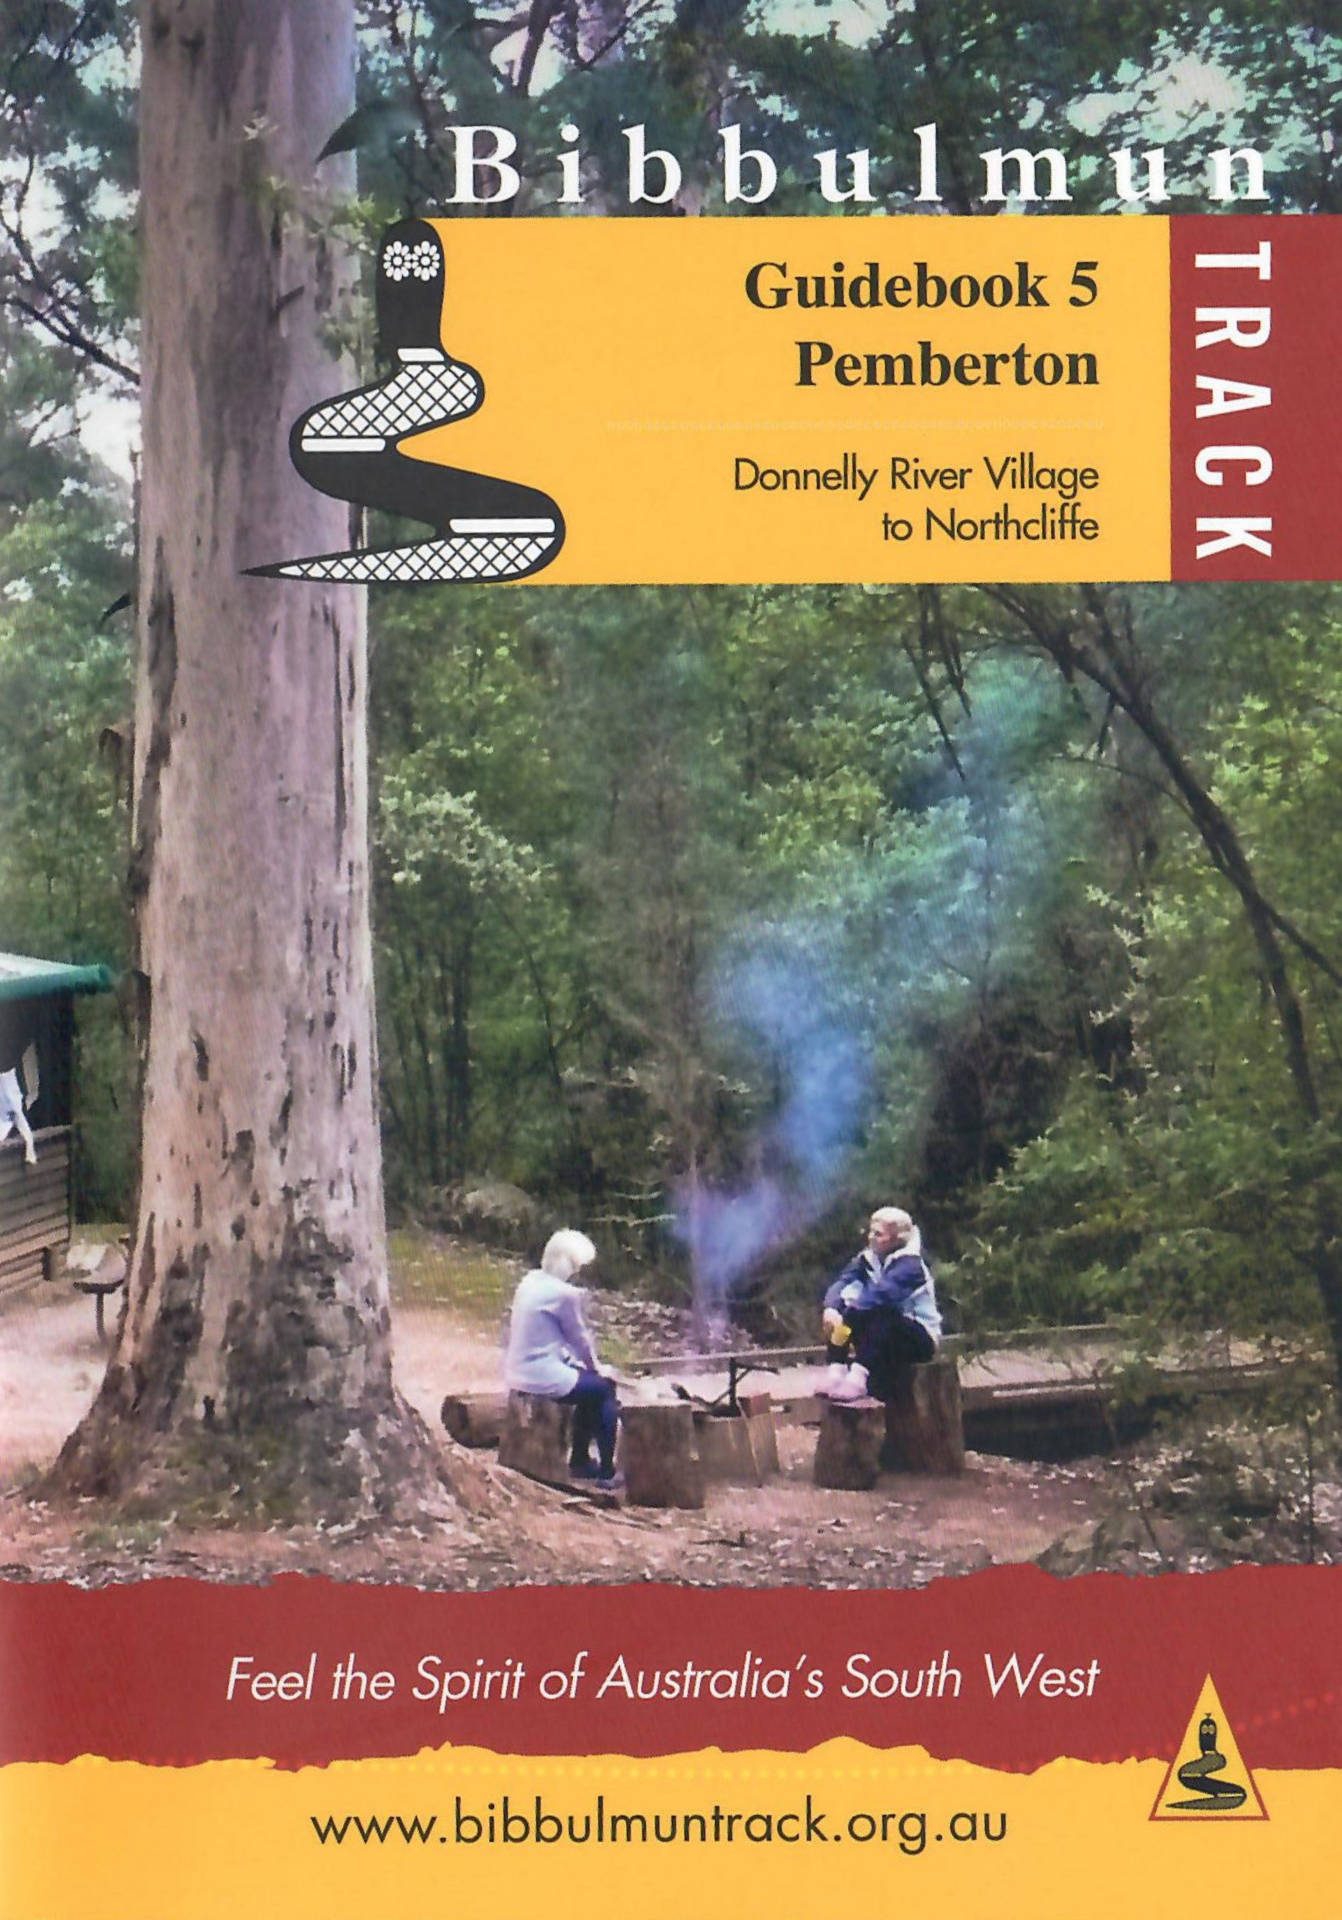 The Bibbulmun Track Guidebook 5 – Pemberton